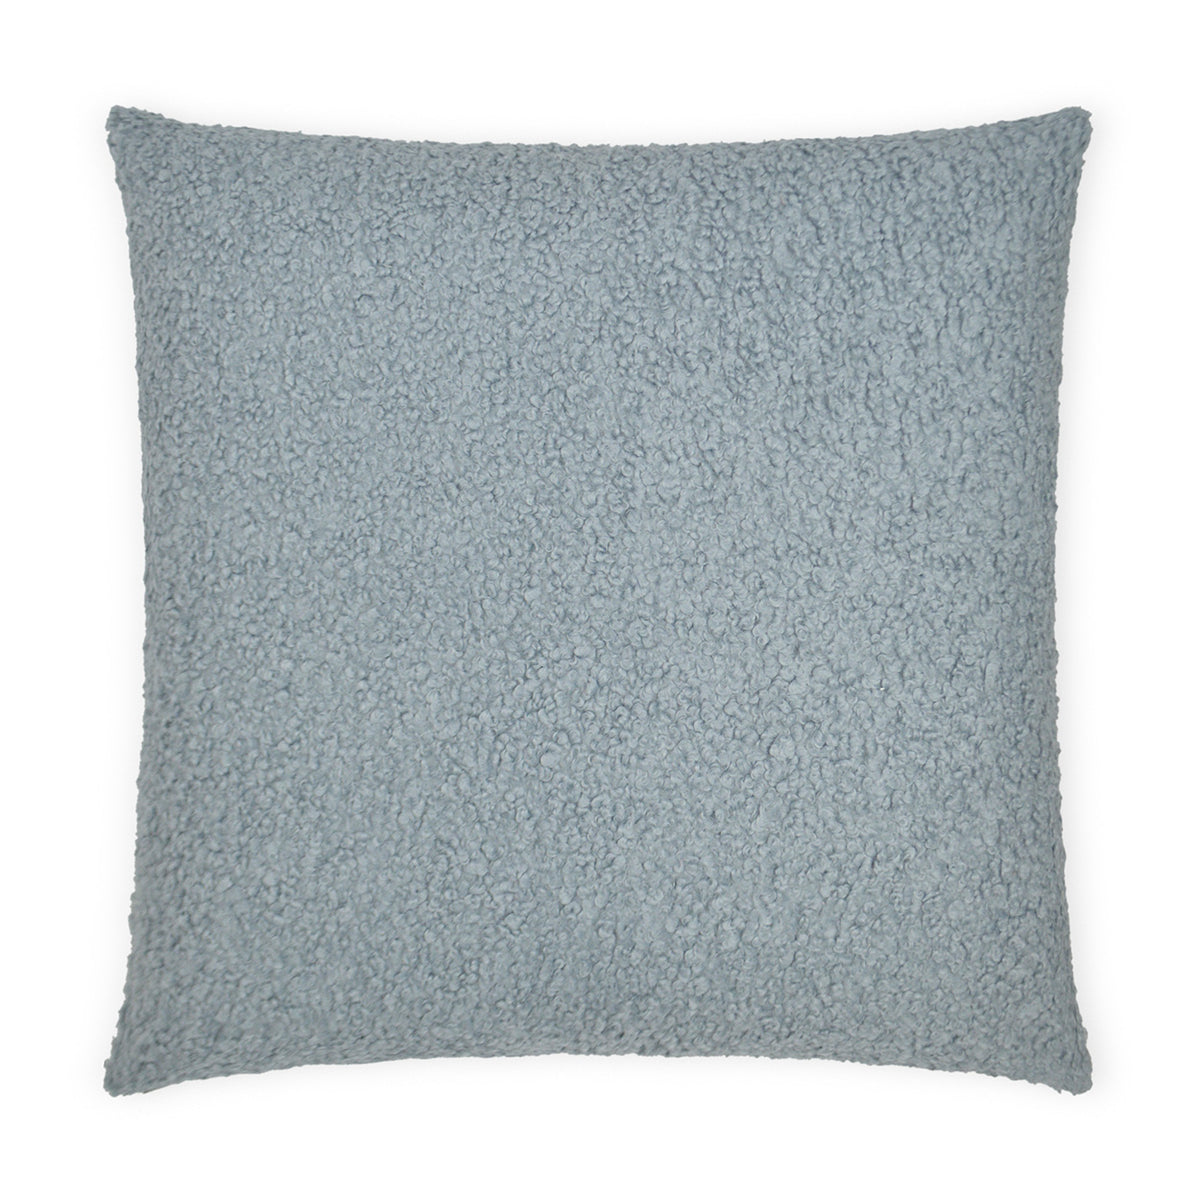 Poodle Square Pillow